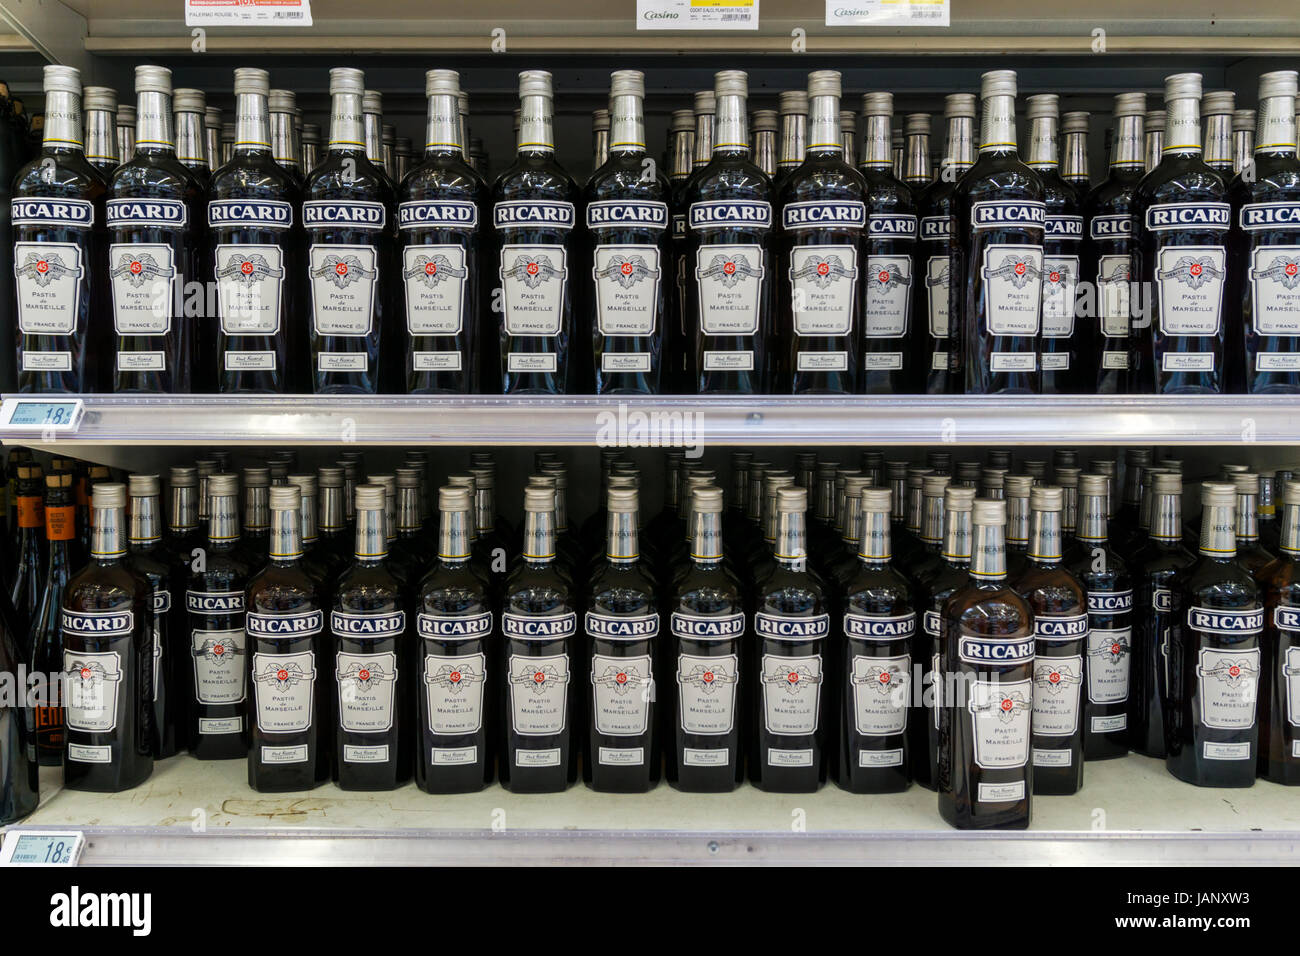 Bottiglie di Ricard per la vendita in un supermercato francese. Foto Stock